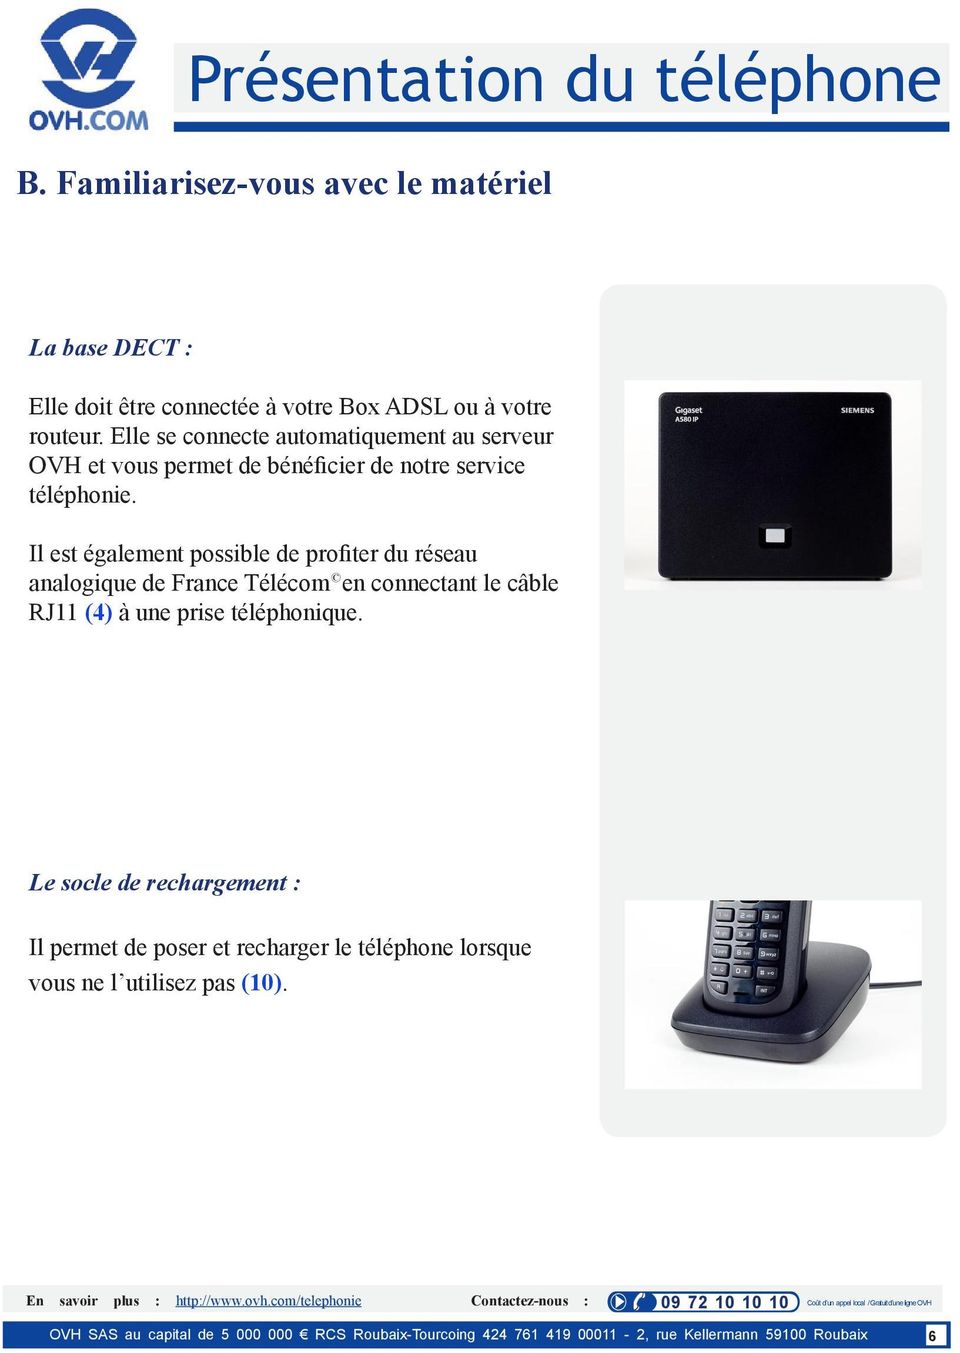 Il est également possible de profiter du réseau analogique de France Télécom en connectant le câble RJ11 (4) à une prise téléphonique.